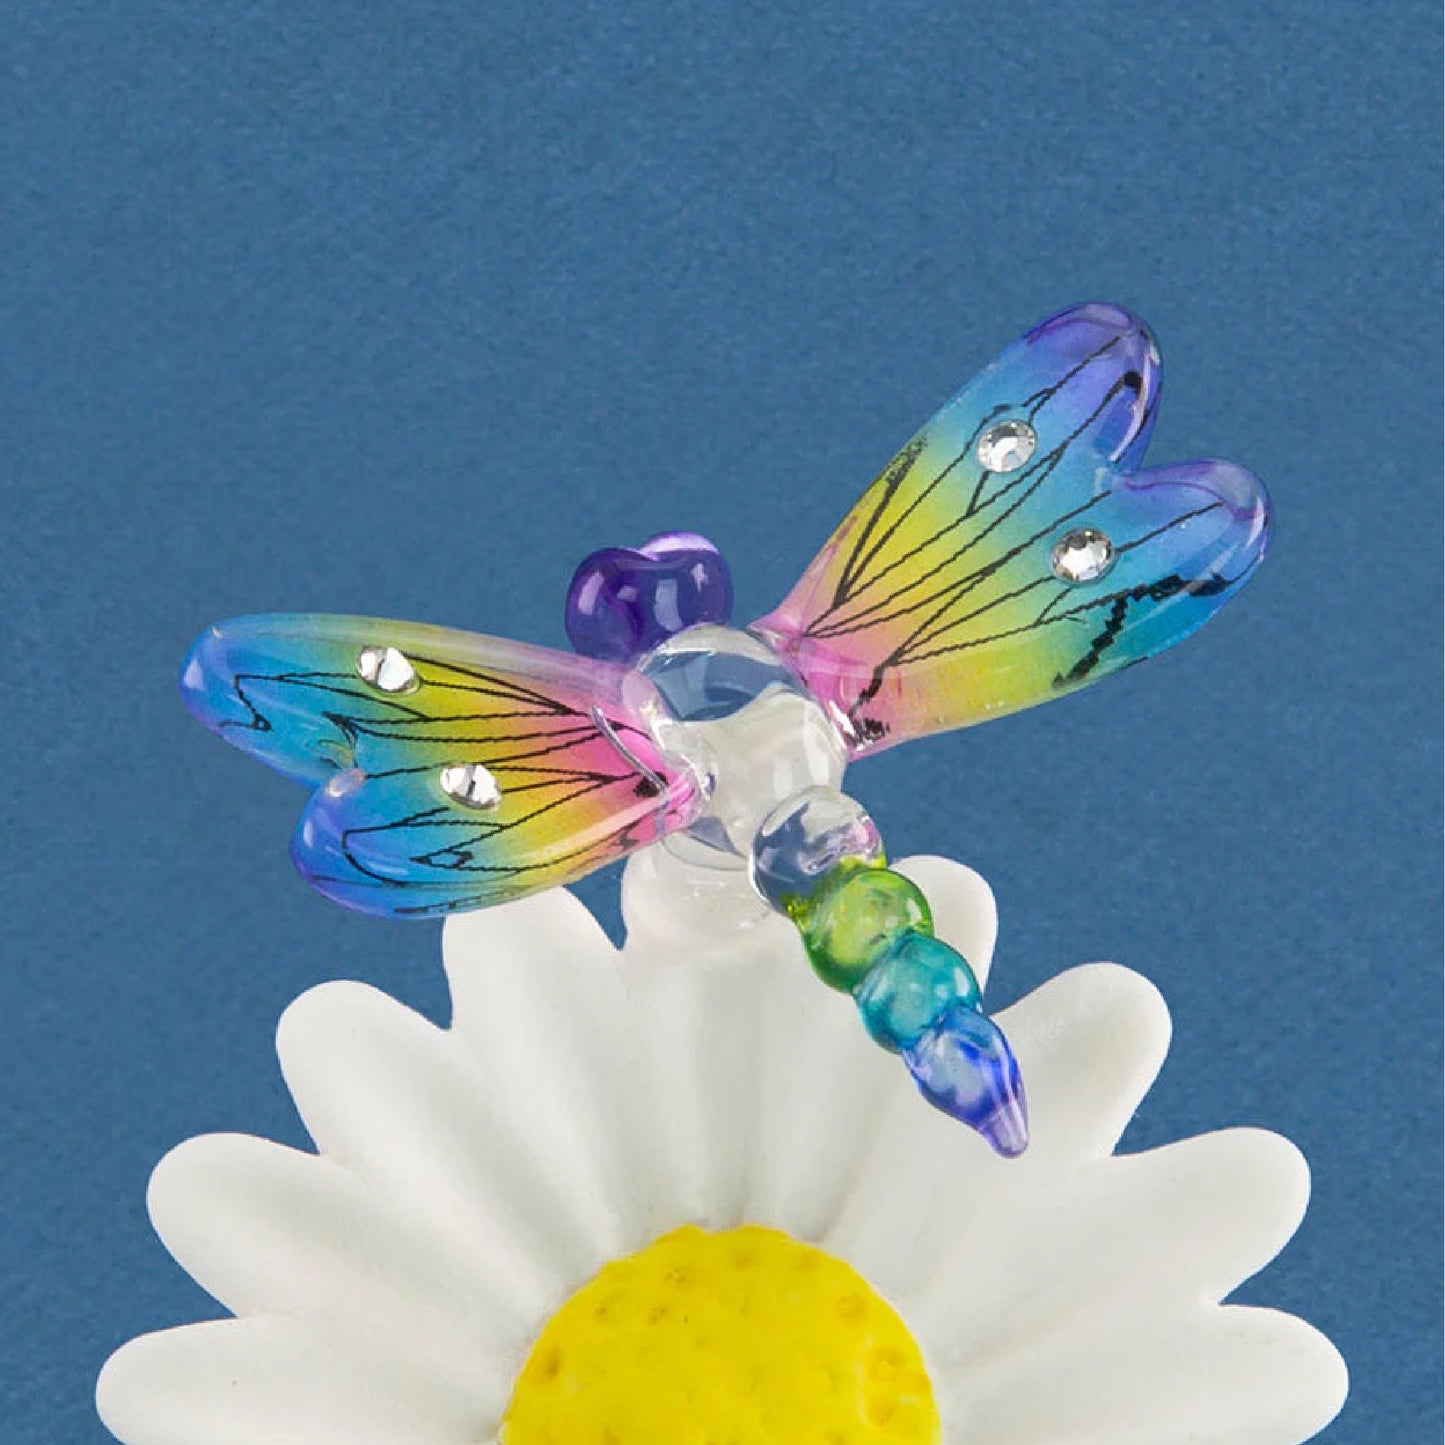 Glass Baron Daisy with Rainbow Sun dancer Dragonfly Figure